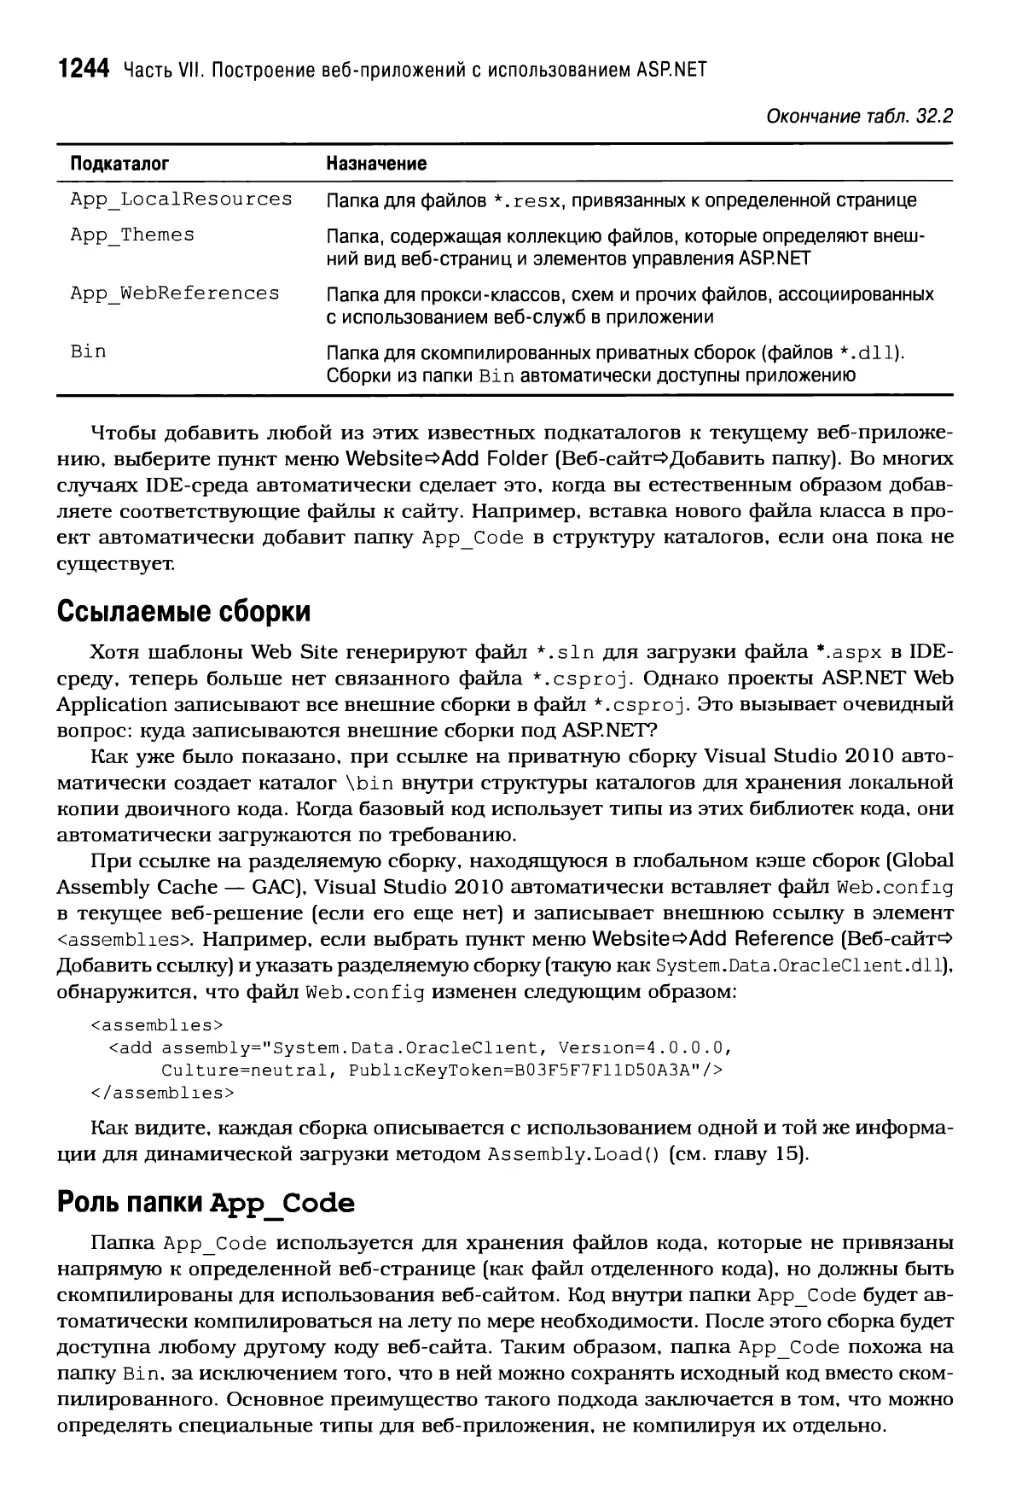 Роль папки App_Code